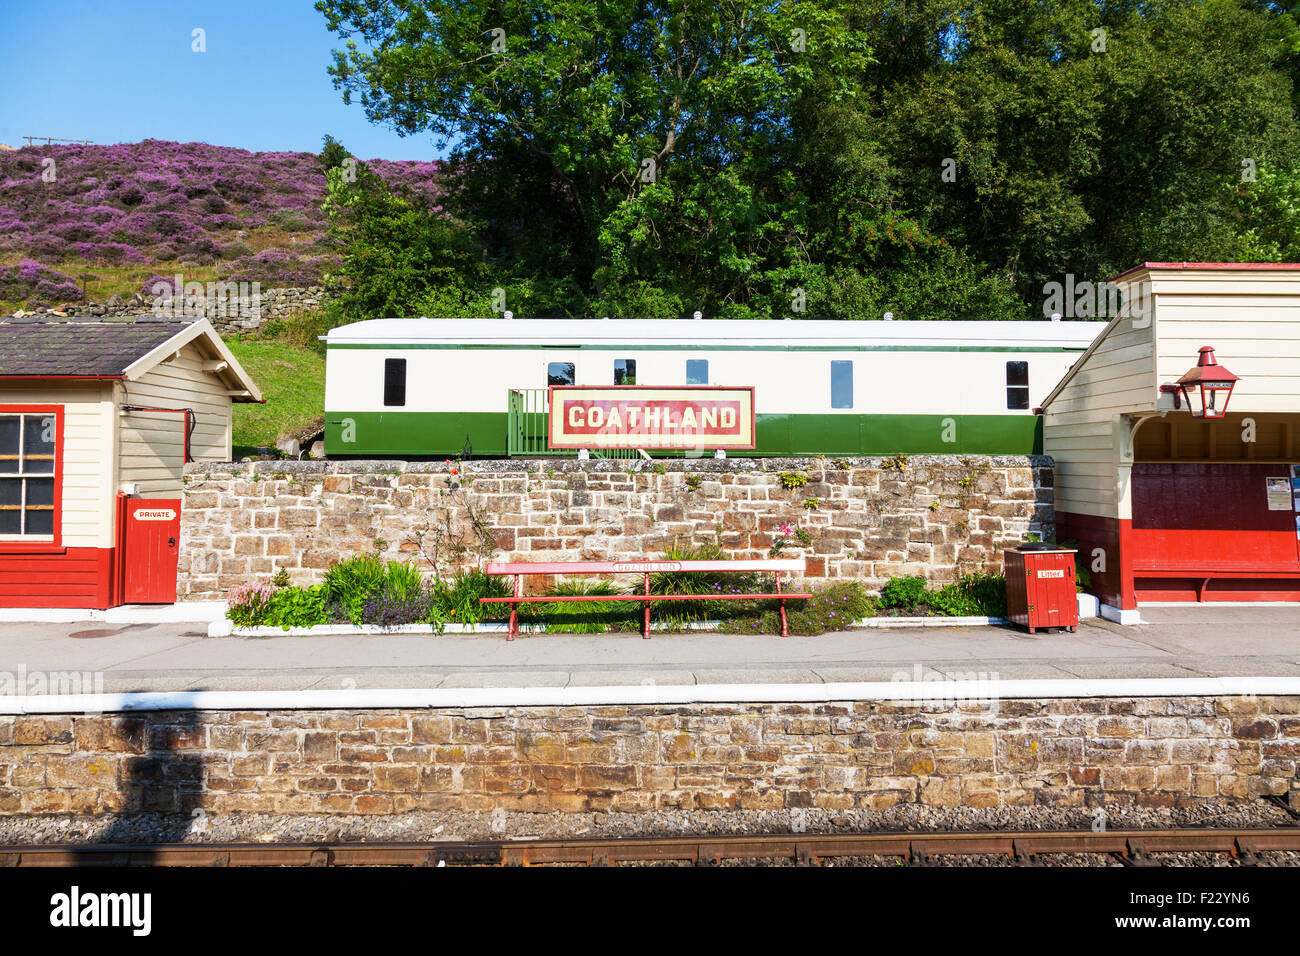 Goathland Dorf Bahn Linie Namensschild auf dem Zug Plattform Wagen im Hintergrund North Yorkshire UK Stockfoto